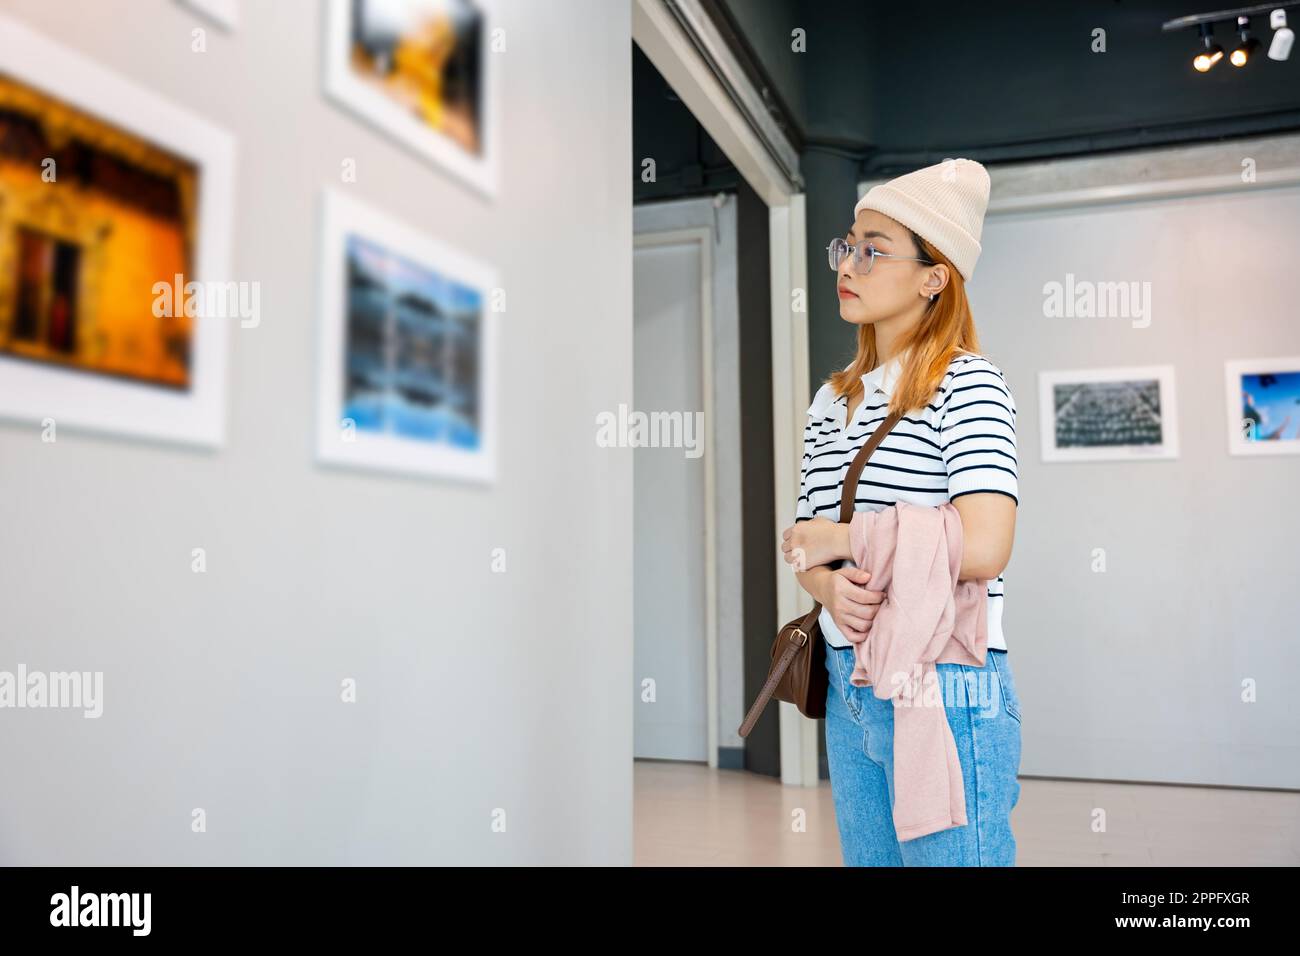 Donna in piedi che guarda una collezione di gallerie d'arte davanti a quadri incorniciati Foto Stock